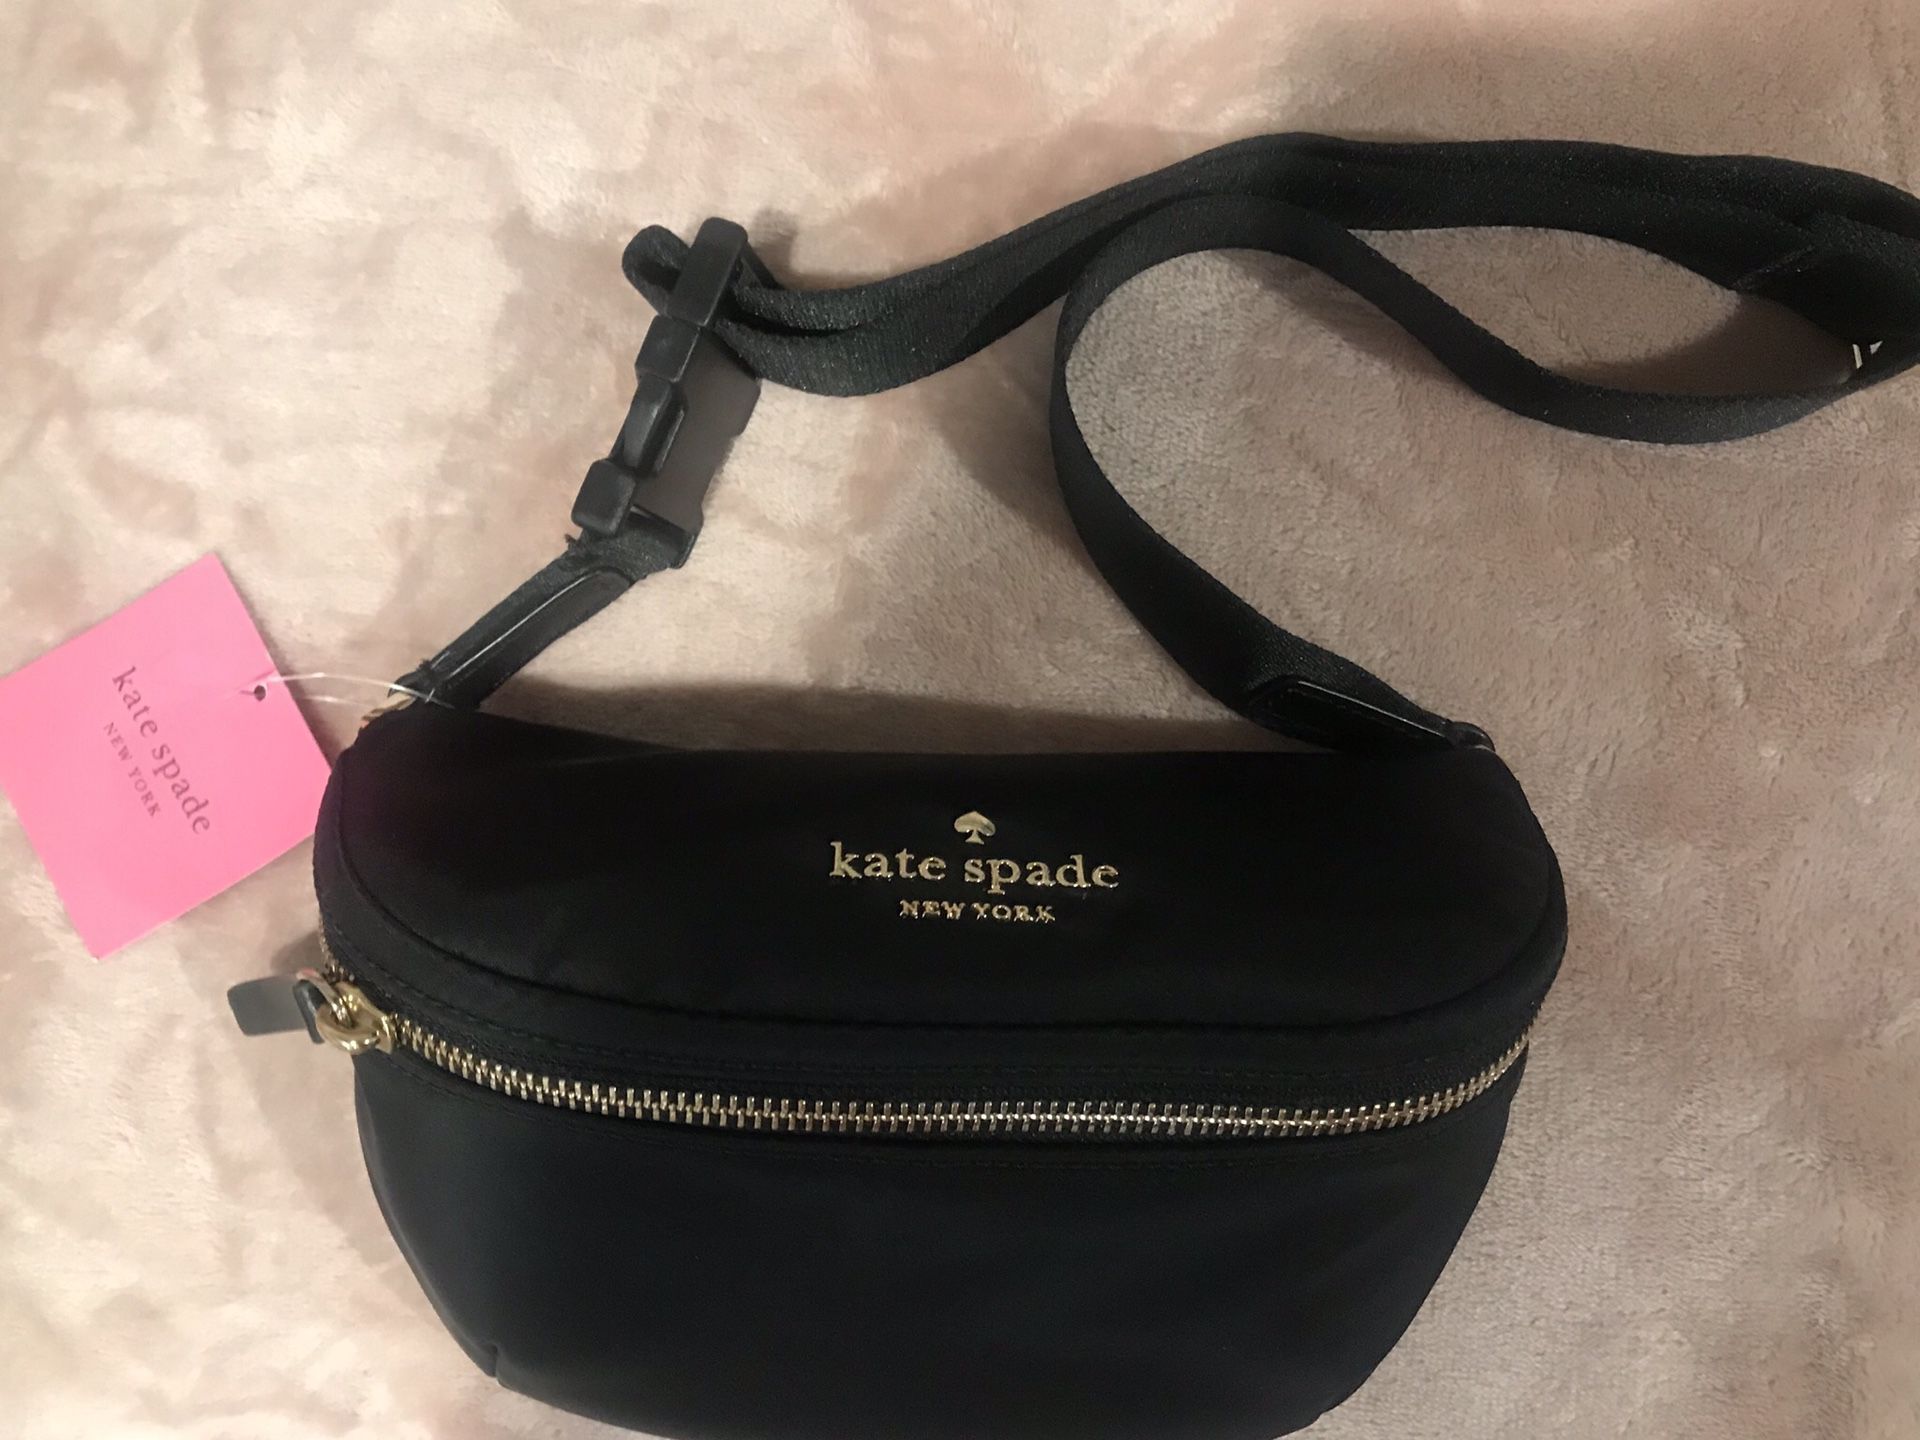 Kate Spade New York Watson Lane Betty Nylon Belt Bag Black $80